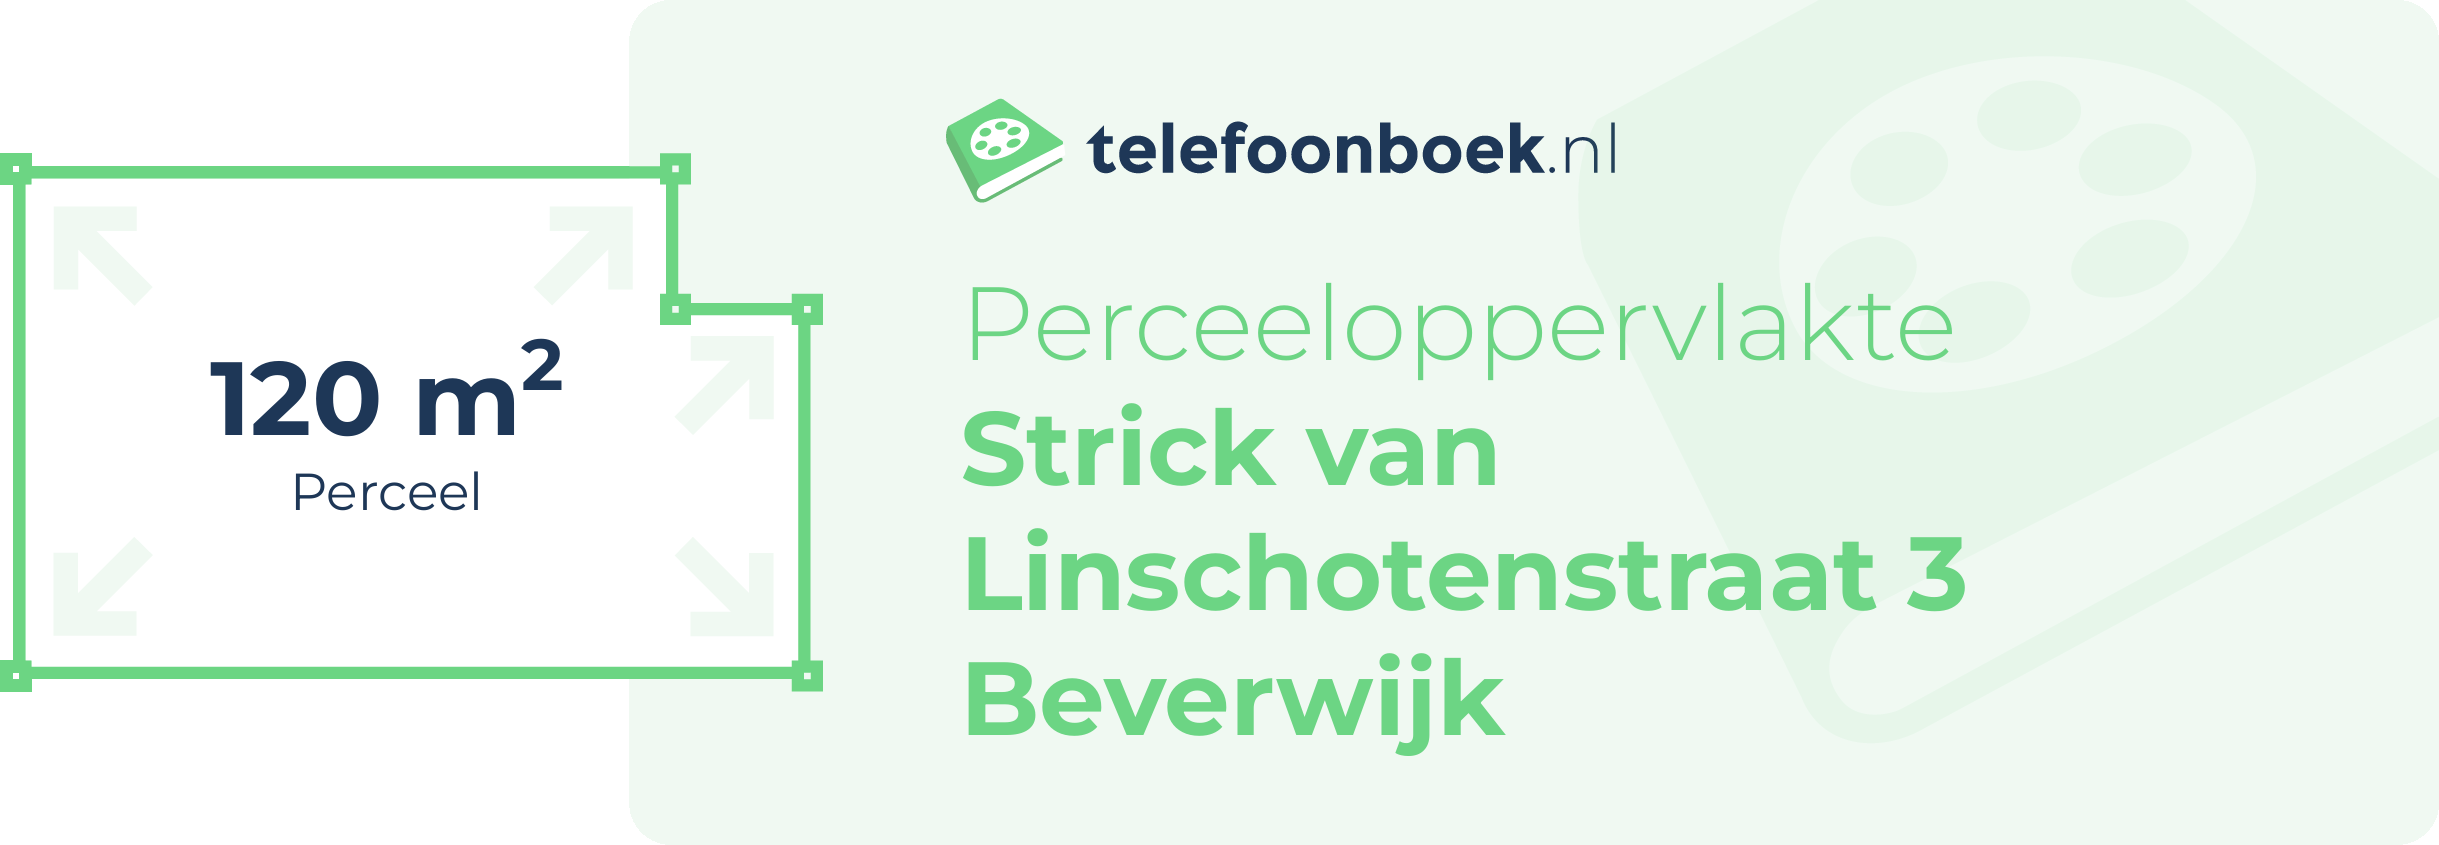 Perceeloppervlakte Strick Van Linschotenstraat 3 Beverwijk